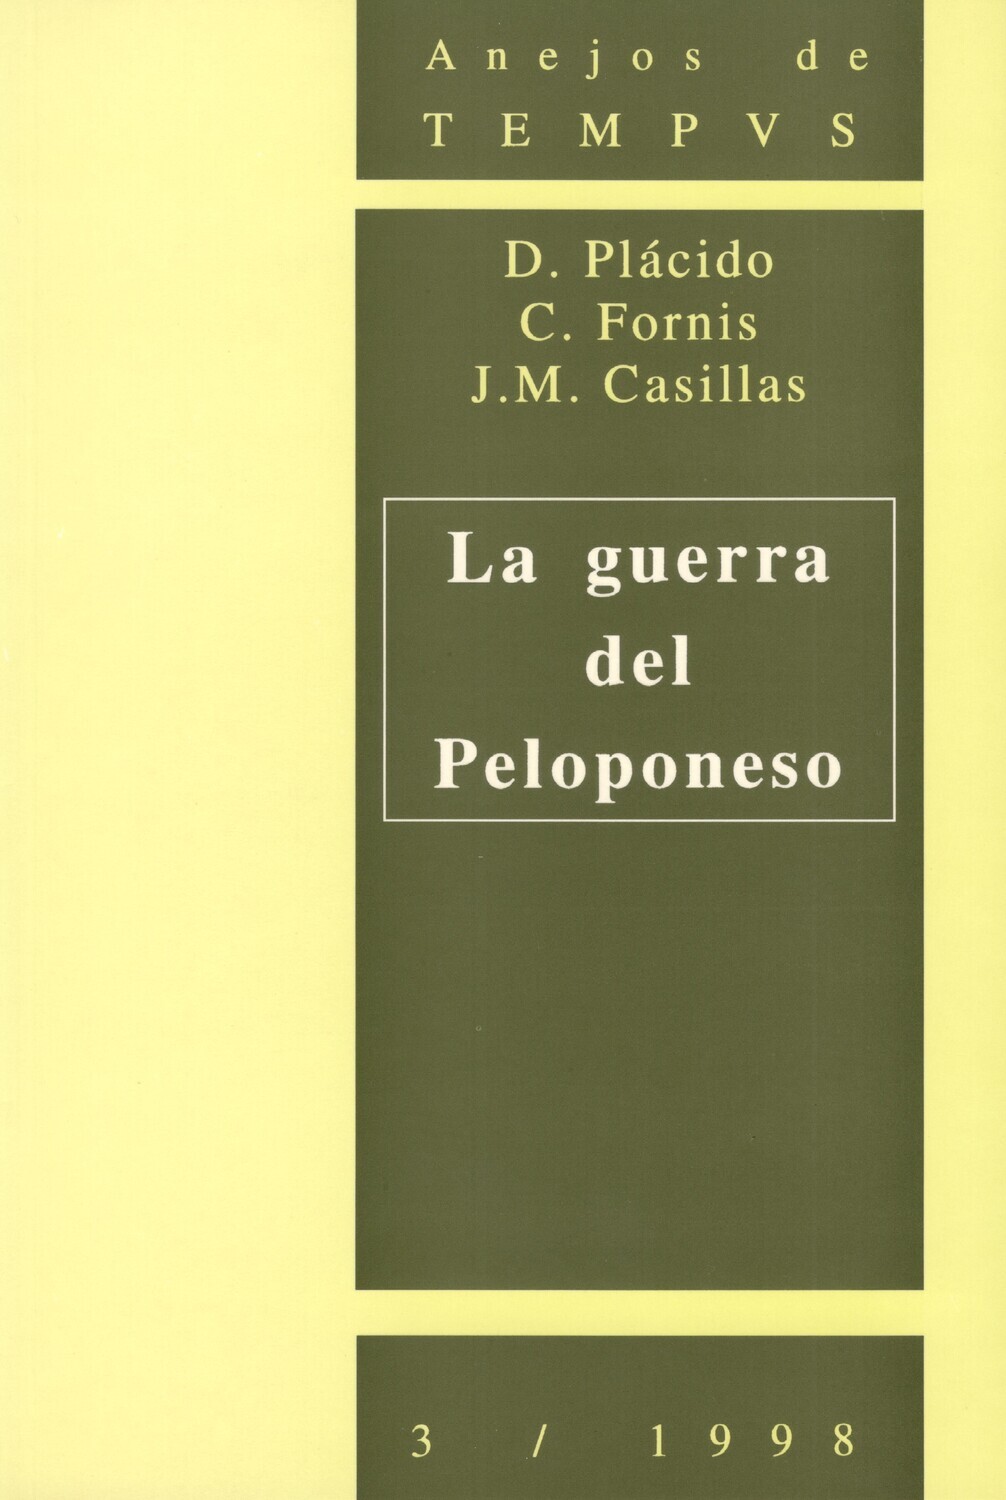 LA GUERRA DEL PELOPONESO (ANEJOS DE TEMPVS Nº 3 / 1998)